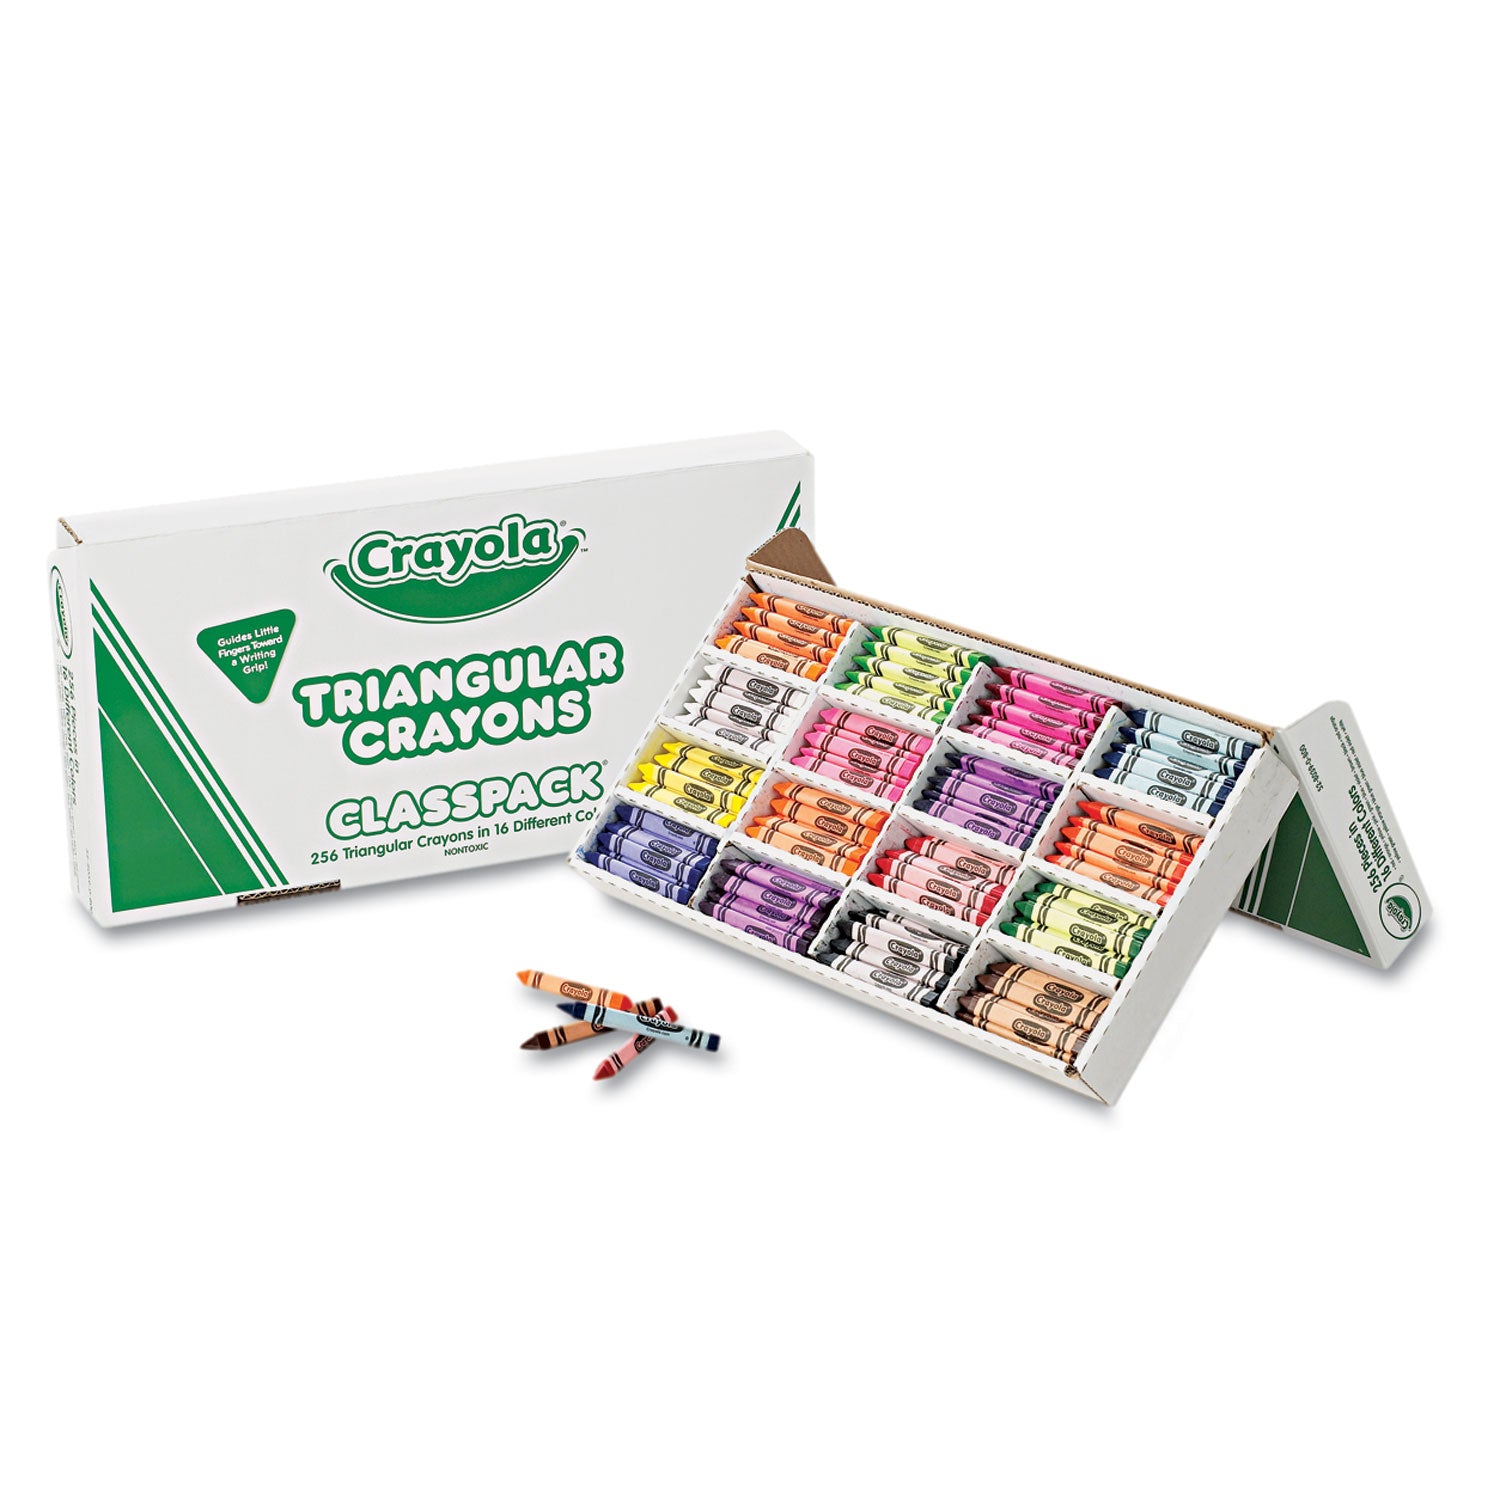 Classpack Triangular Crayons, 16 Colors, 256/Carton - 1